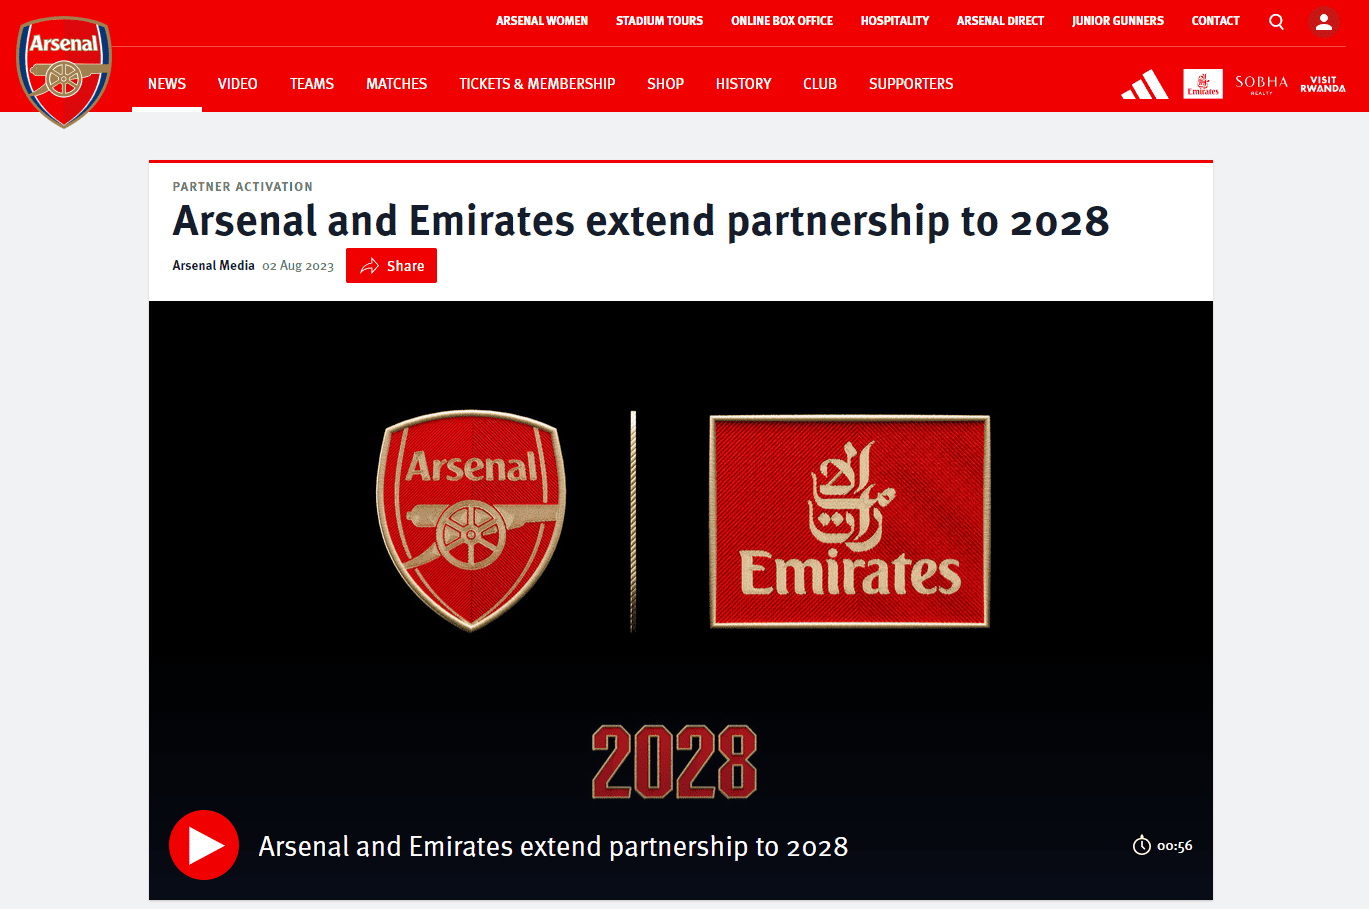 Arsenal and Emirates partnership marketing